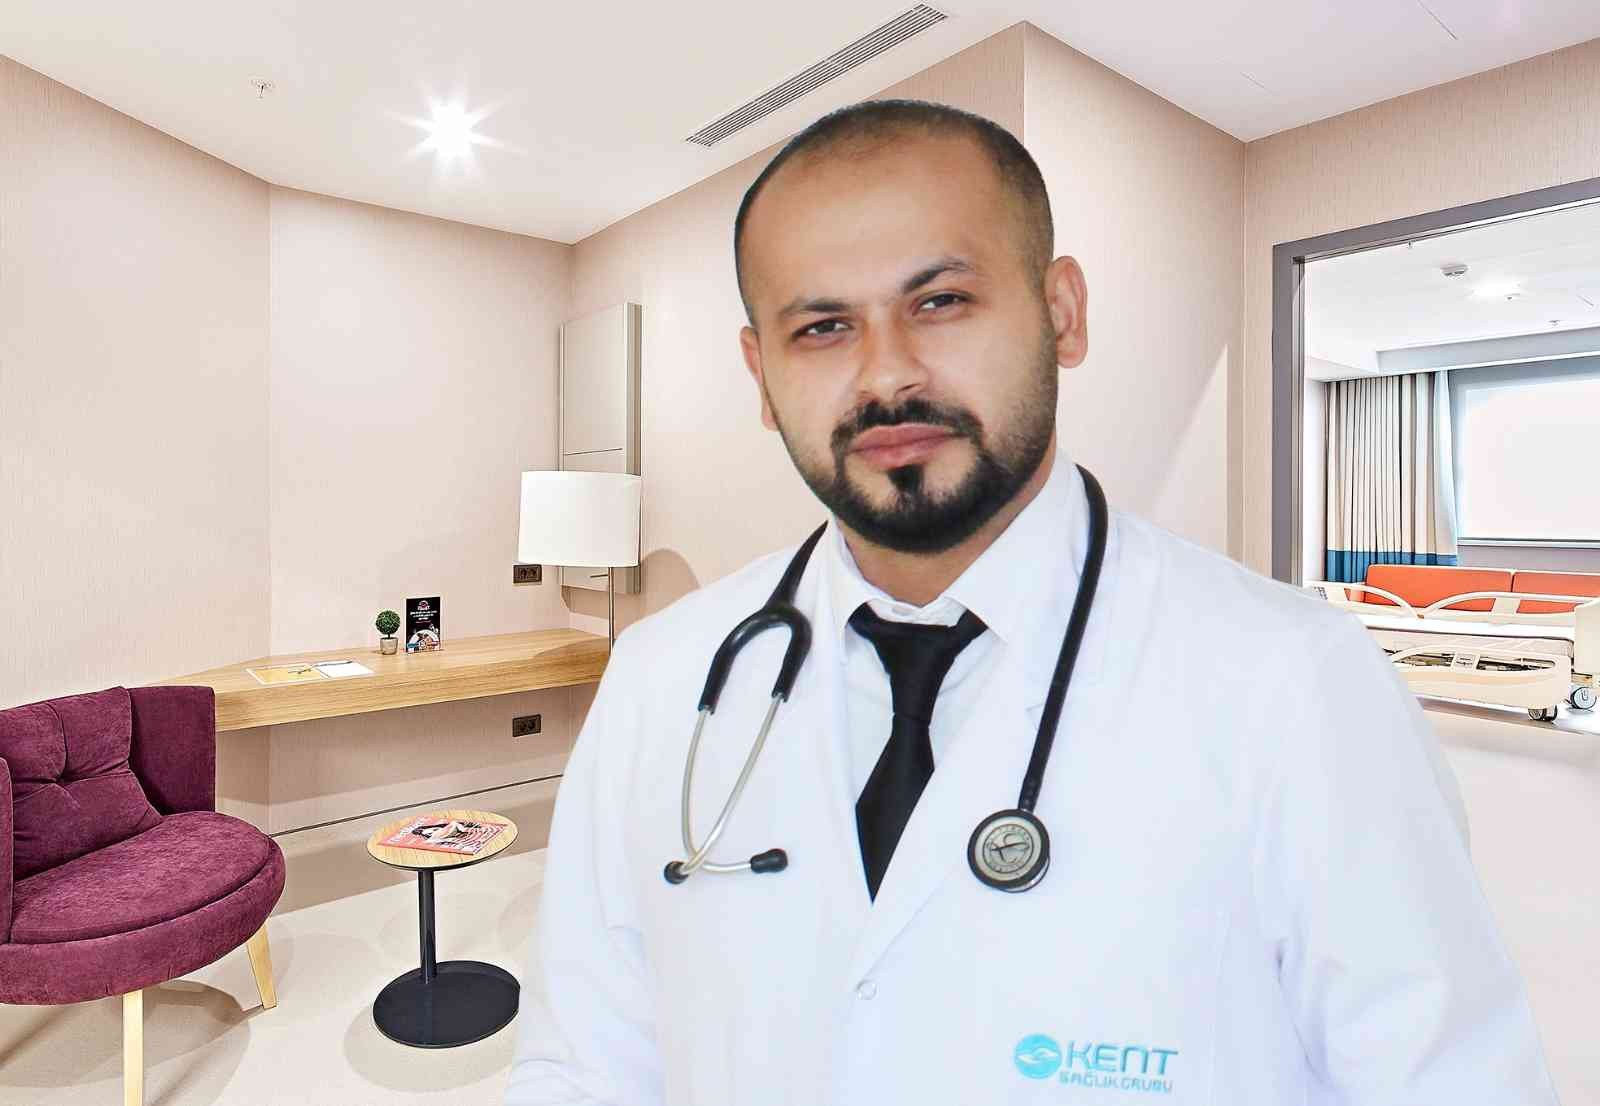 “Tek kesi tekniği” akciğer kanseri vak’alarında yüz güldürücü sonuçlar sağlıyor #izmir